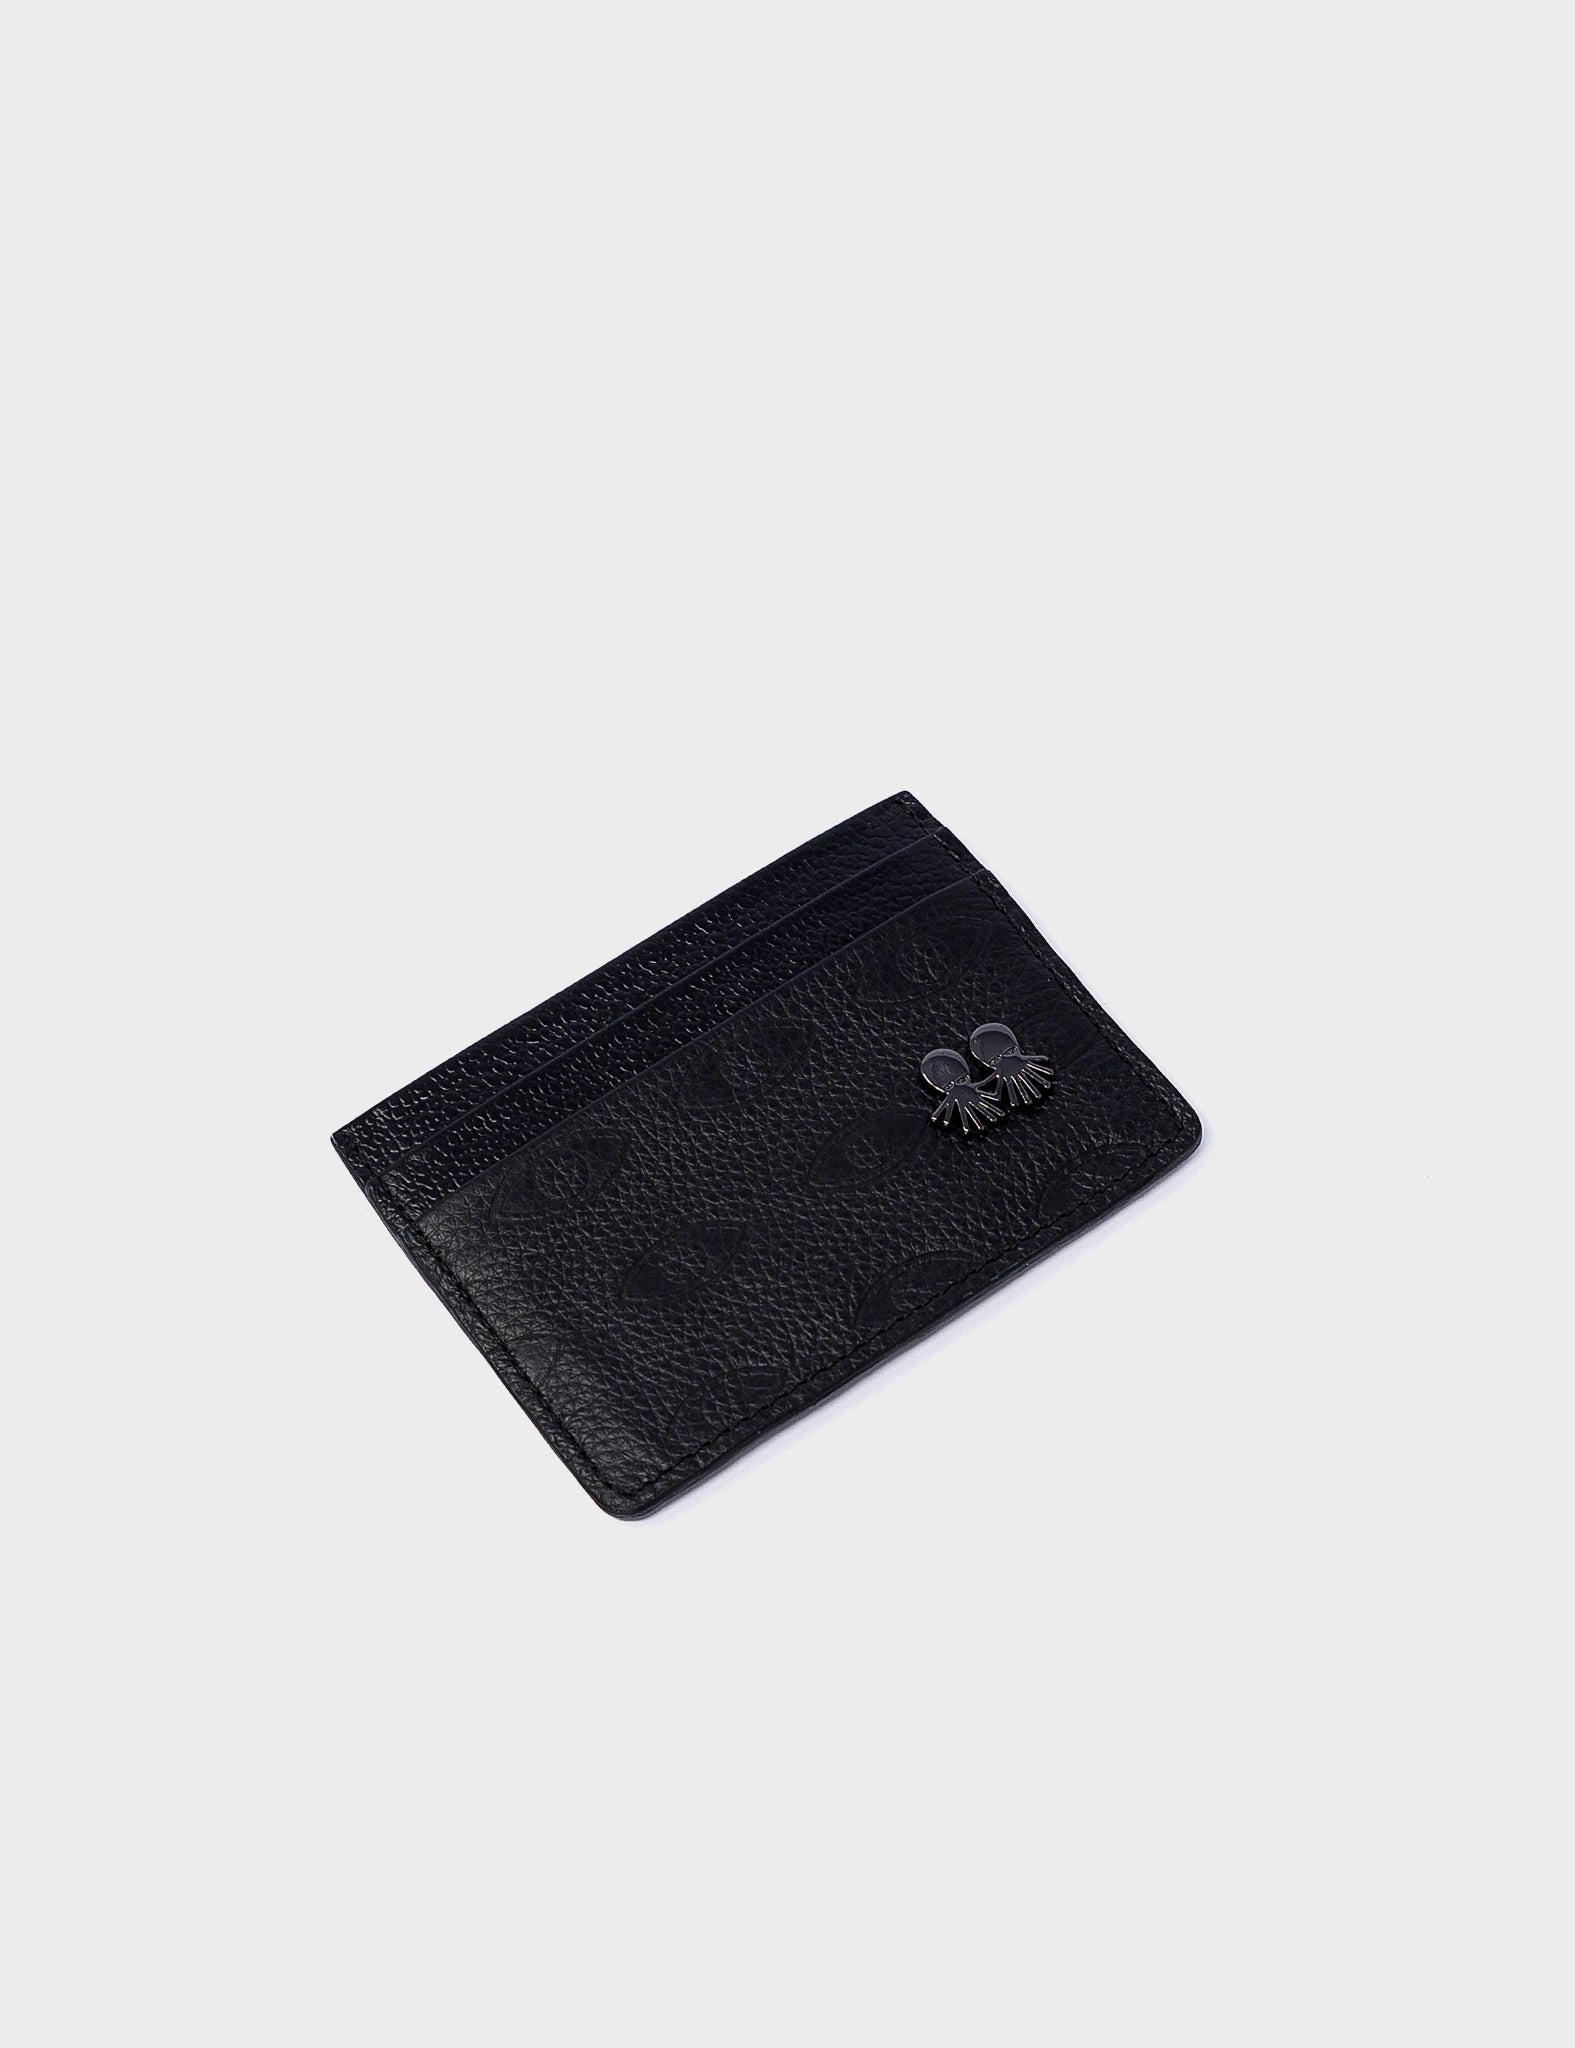 Filium Wallet Black Leather Cardholder - Eyes Pattern Debossed - Side 